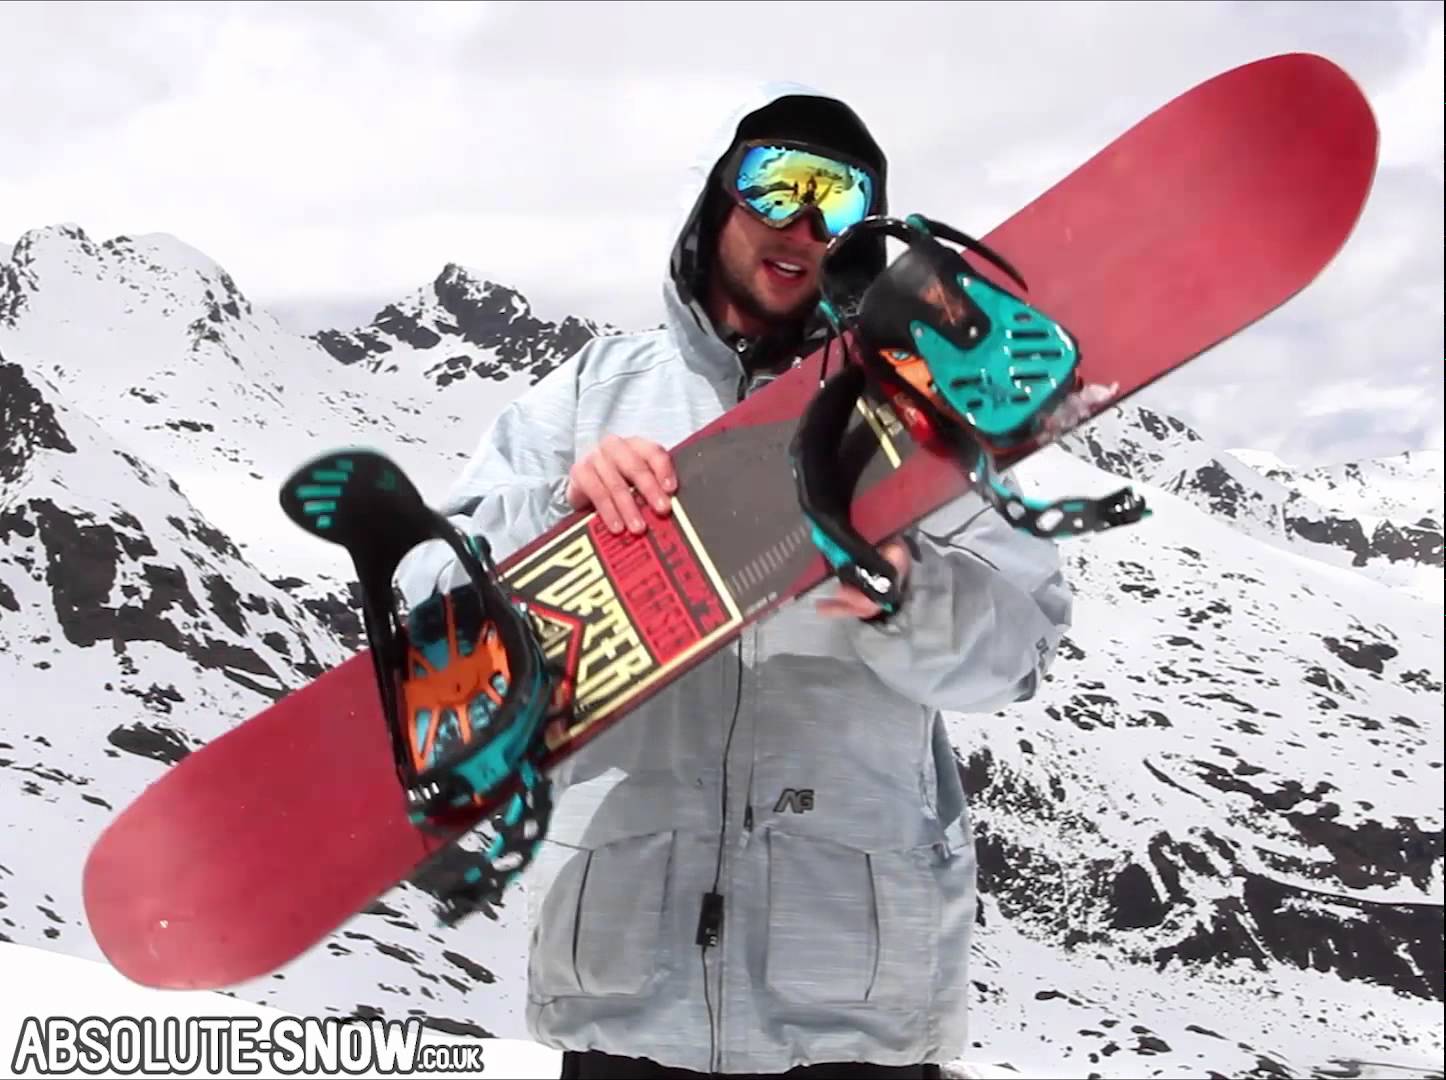 torstein snowboard